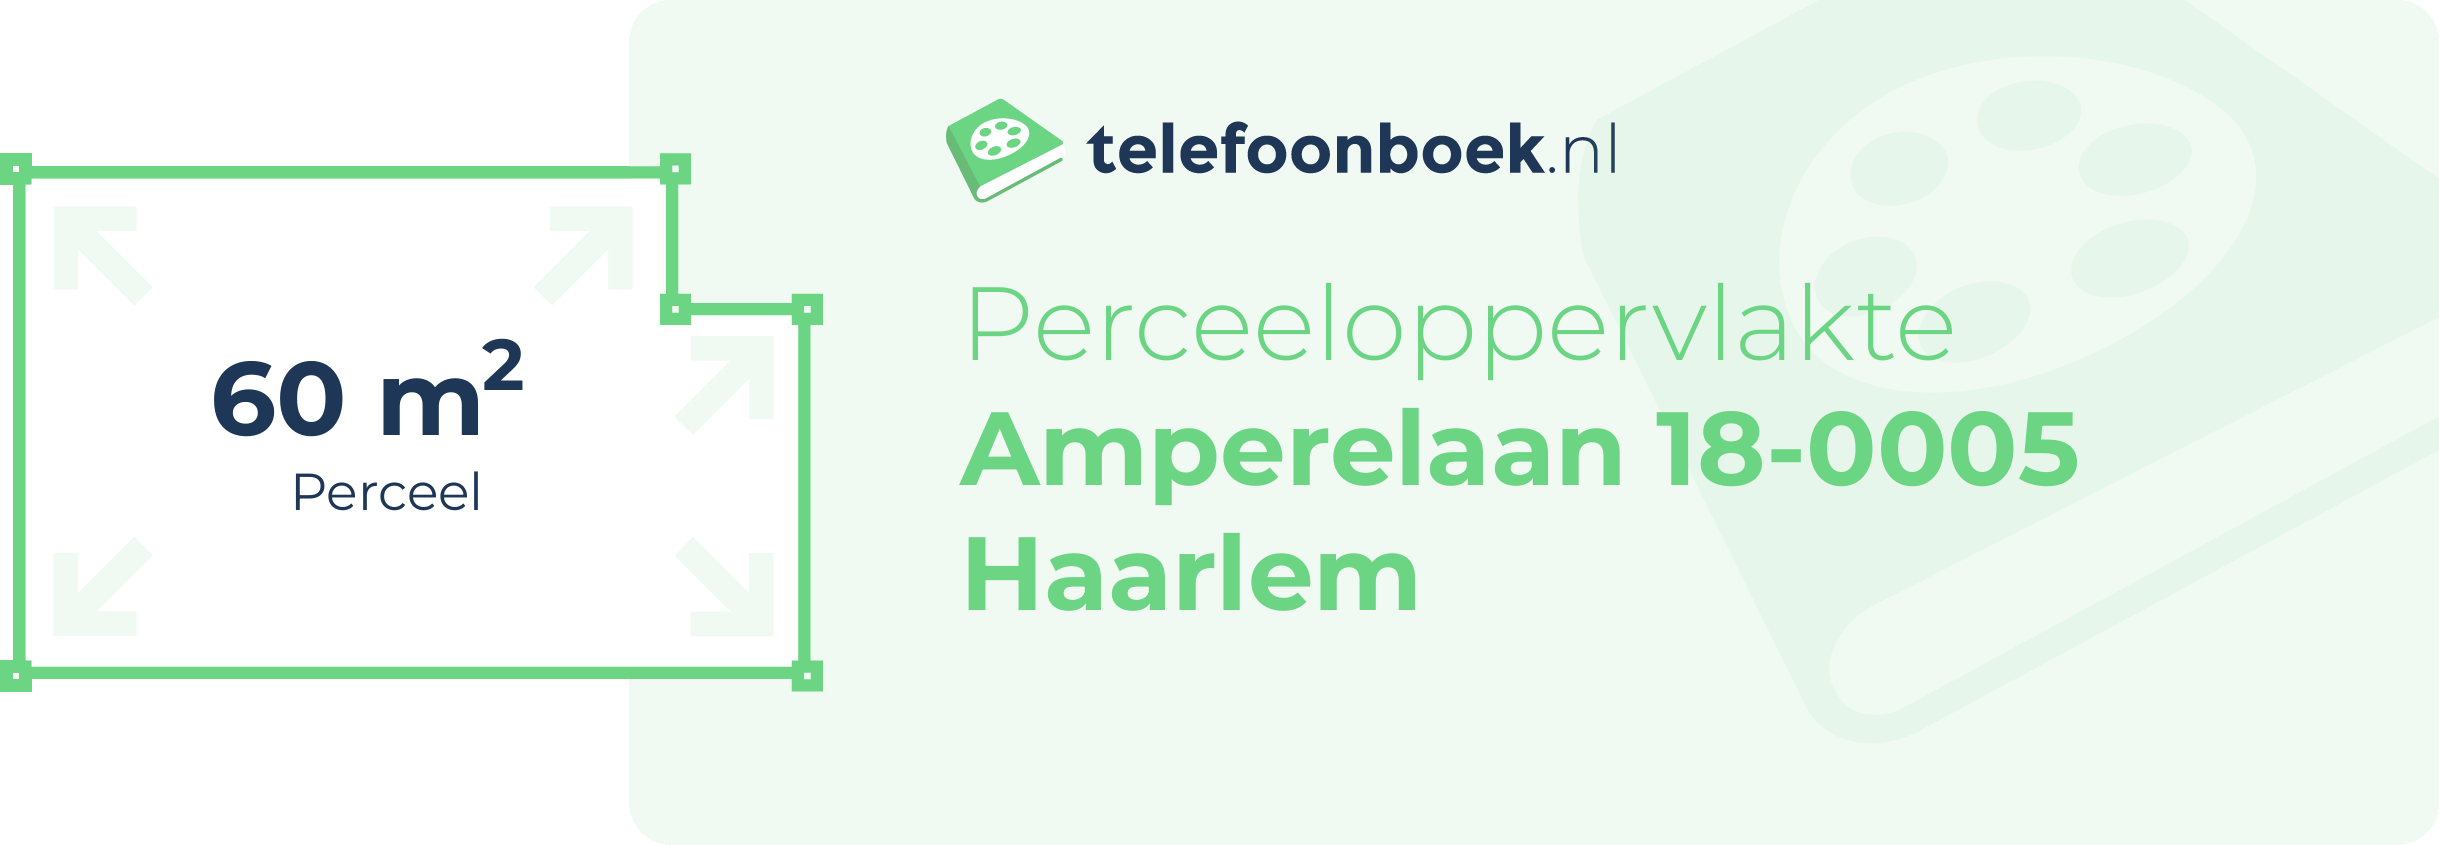 Perceeloppervlakte Amperelaan 18-0005 Haarlem